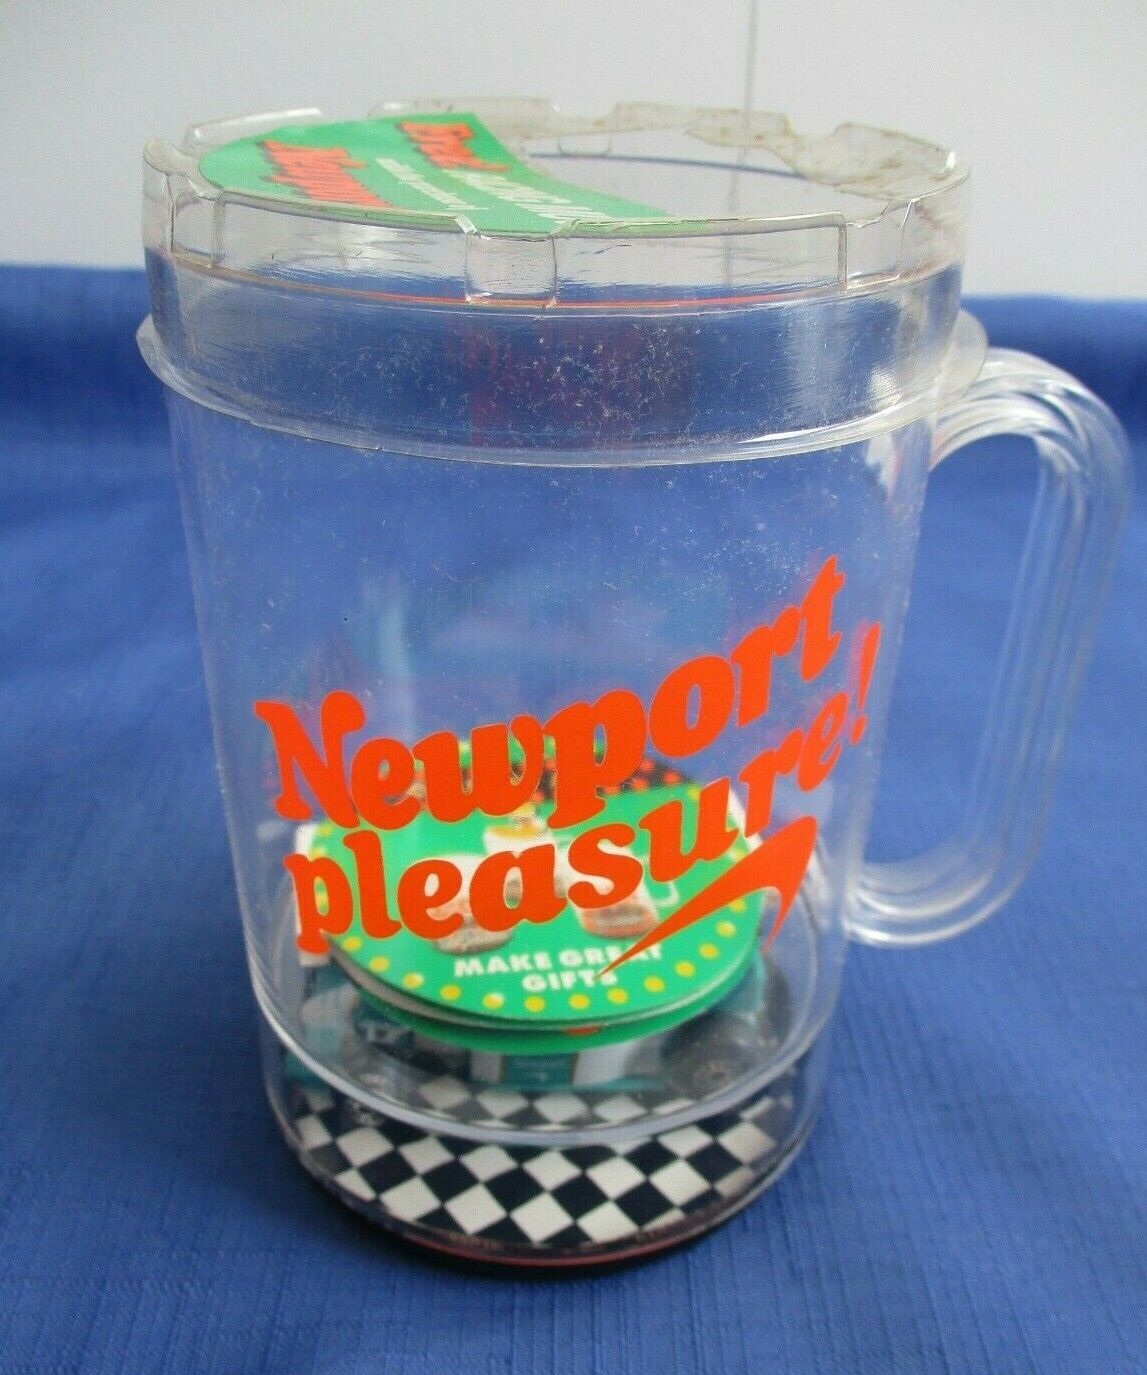 NEW Vintage Newport Pleasure Cigarettes Plastic Racecar Mug 1990's Promotion